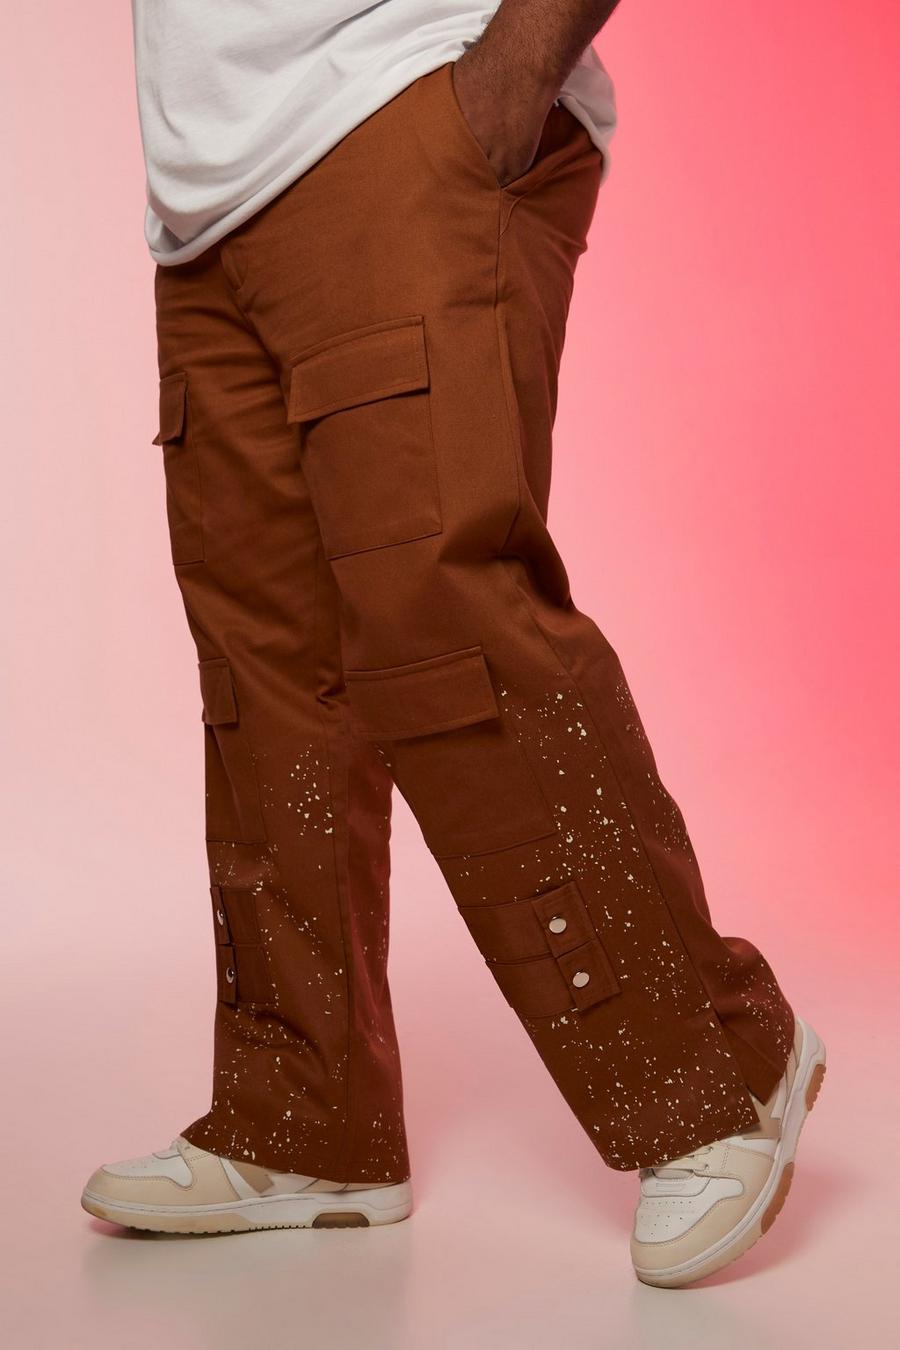 טבק marrón מכנסי דגמ'ח מולבנים בגזרת רגל ישרה עם כיסים מרובים, מידות גדולות